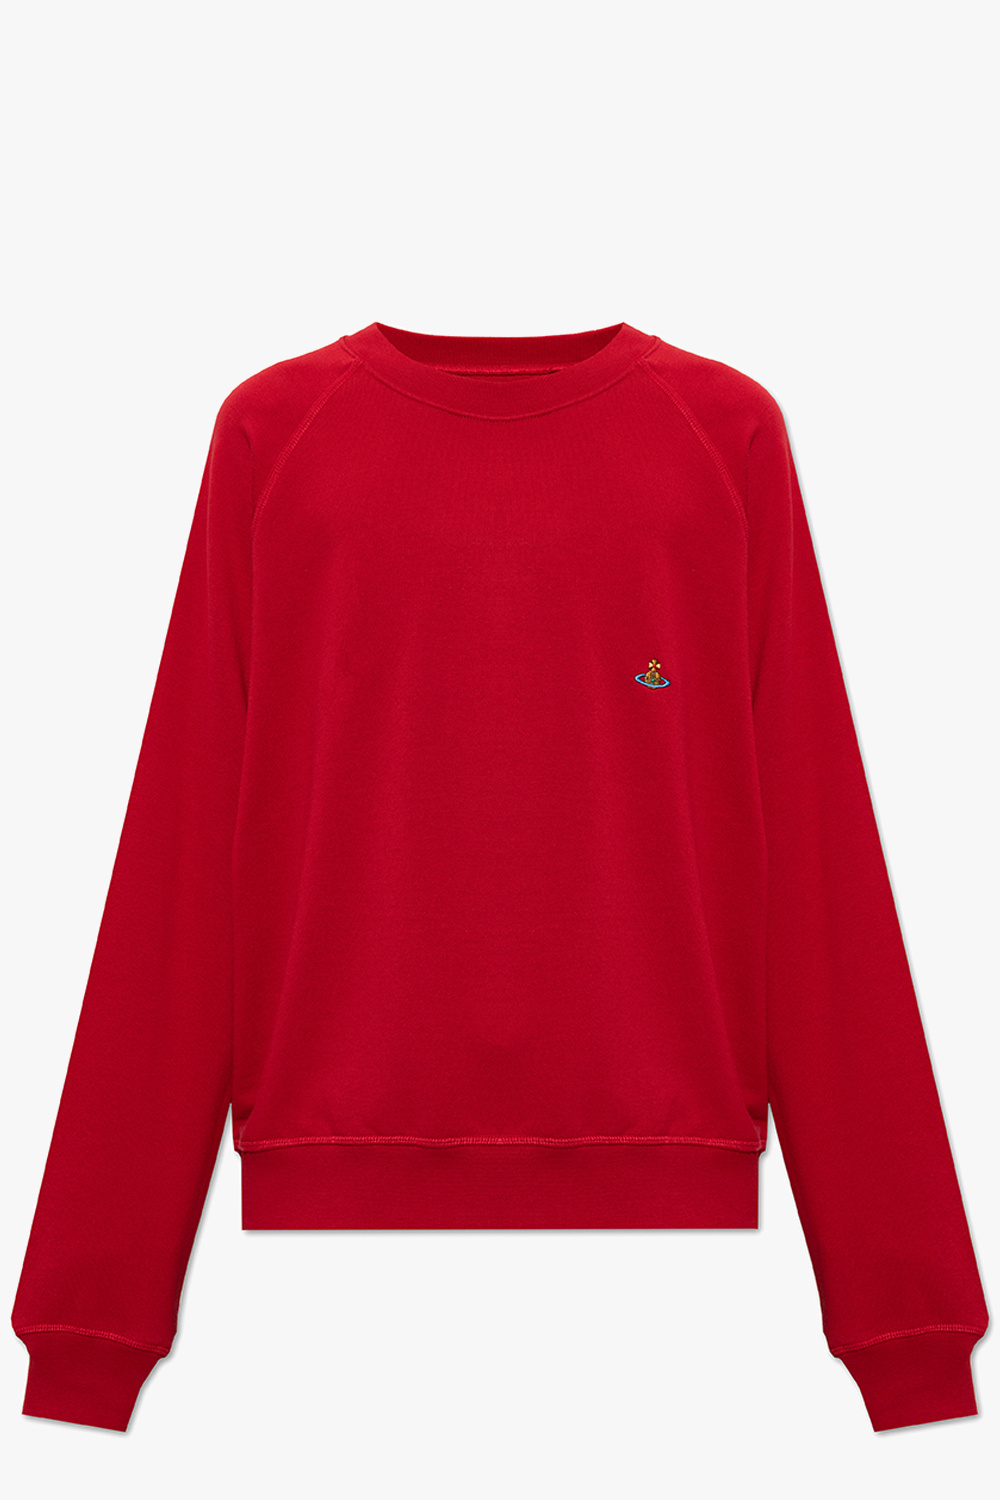 Vivienne Westwood Organic cotton sweatshirt